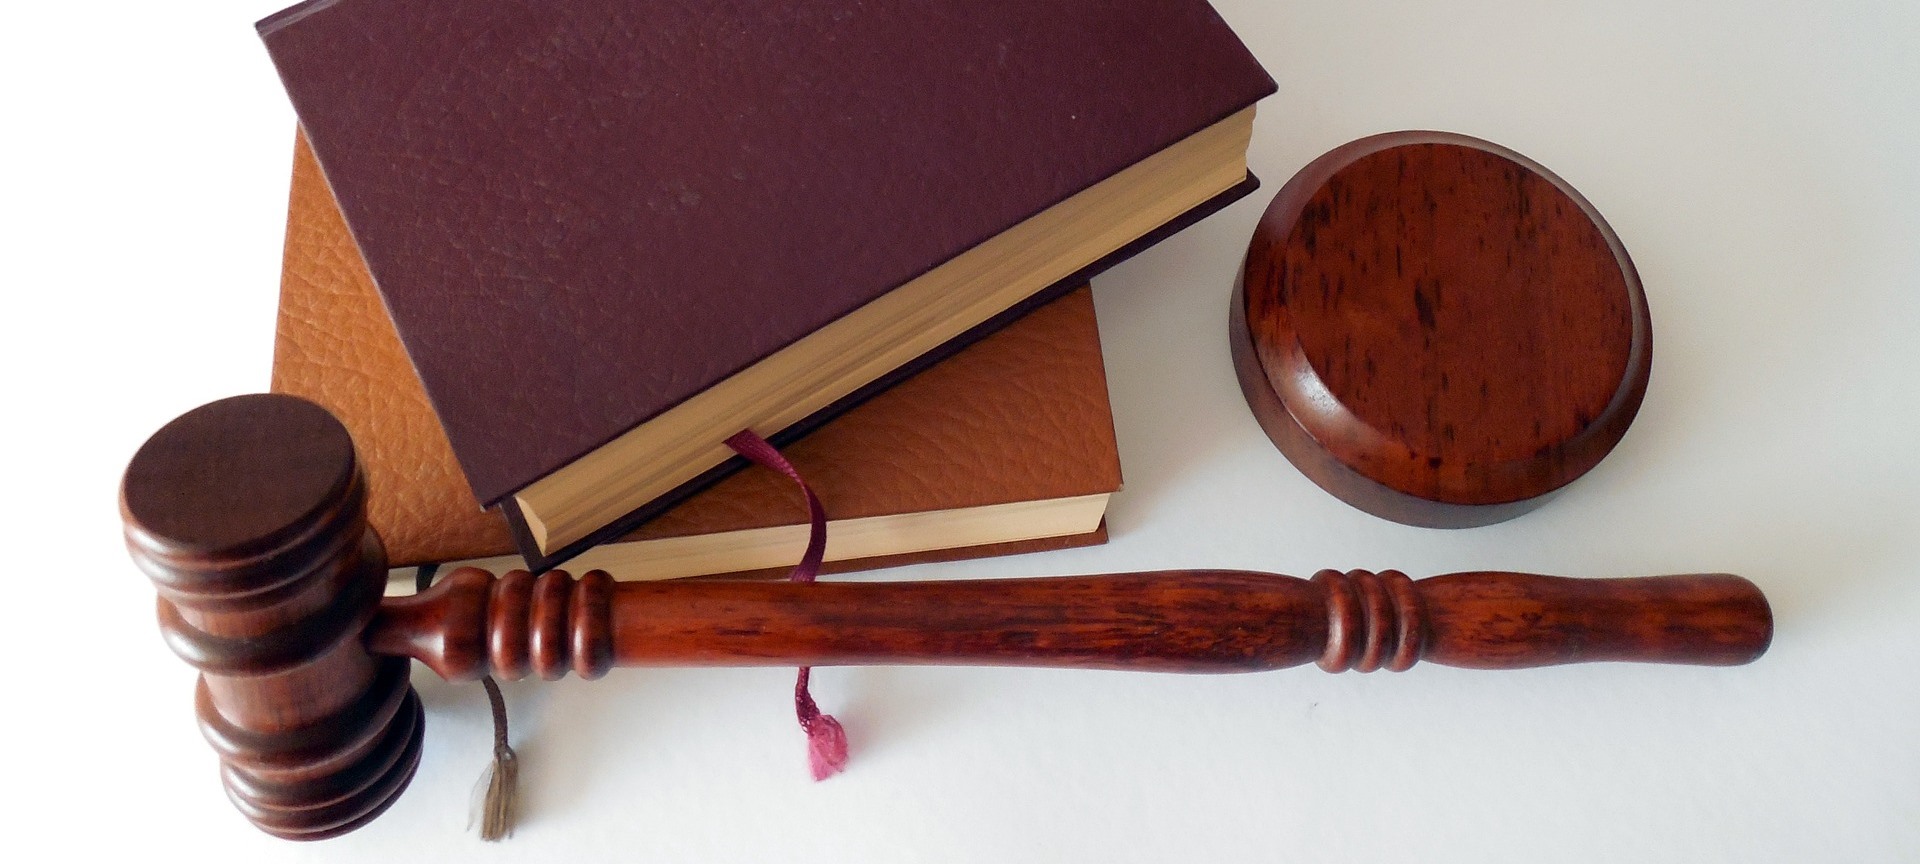 Law and order essay in urdu